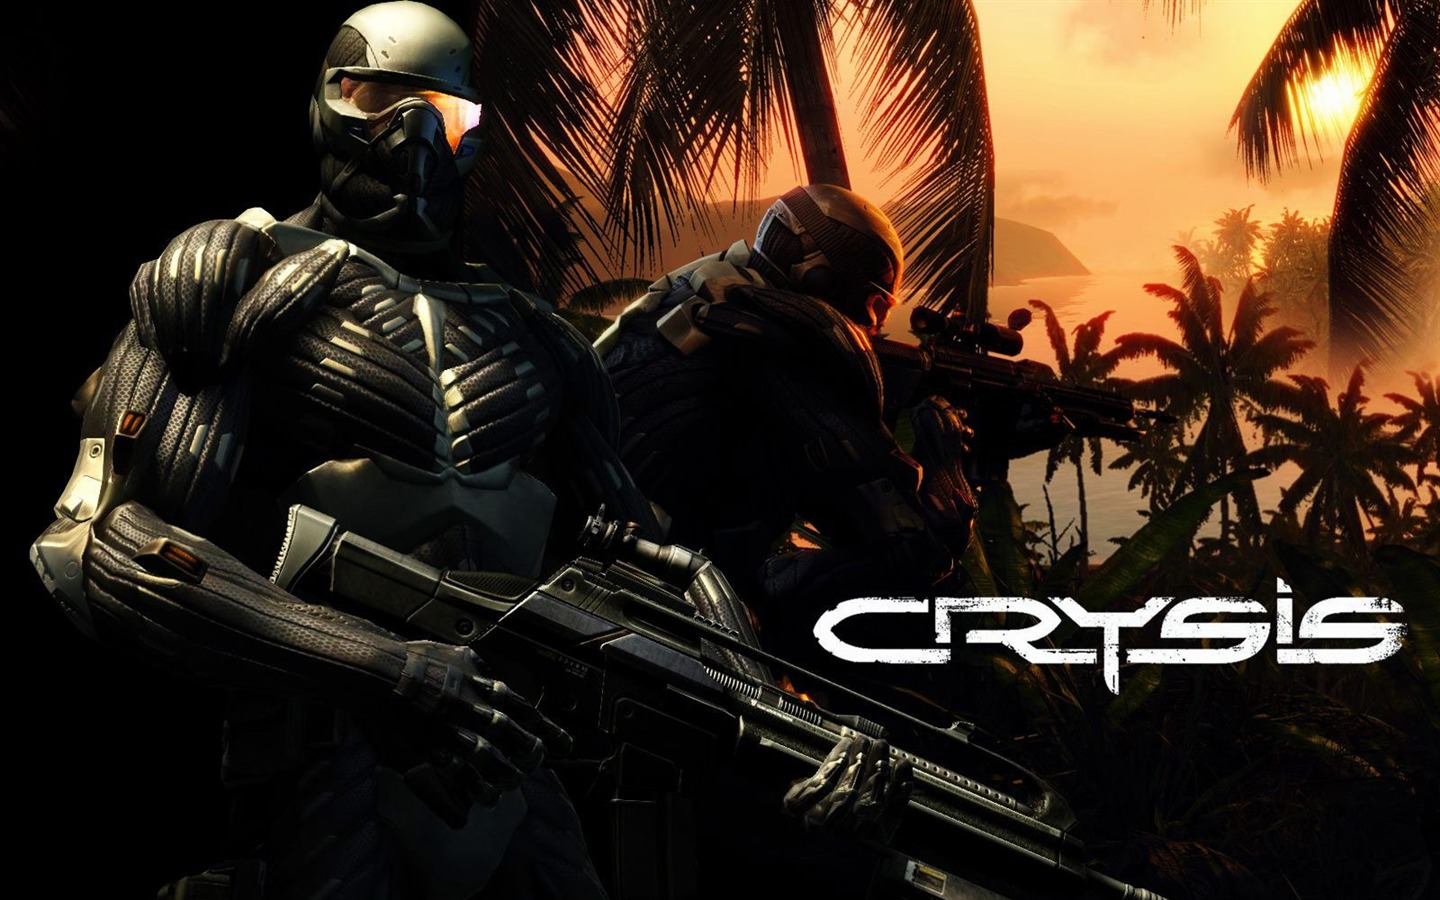  Crysisの壁紙(2) #20 - 1440x900